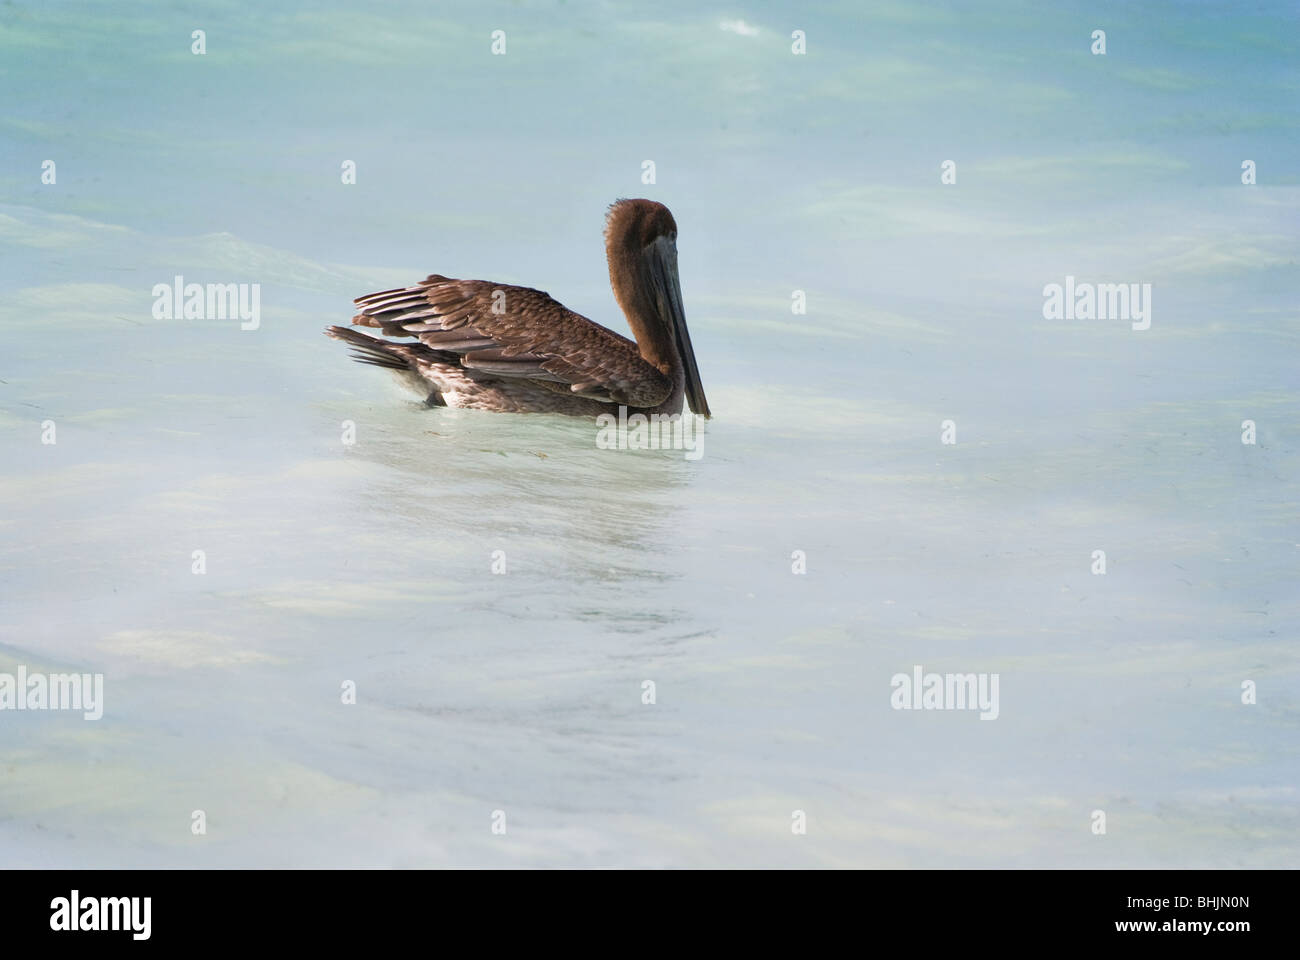 Pelican in water Stock Photo